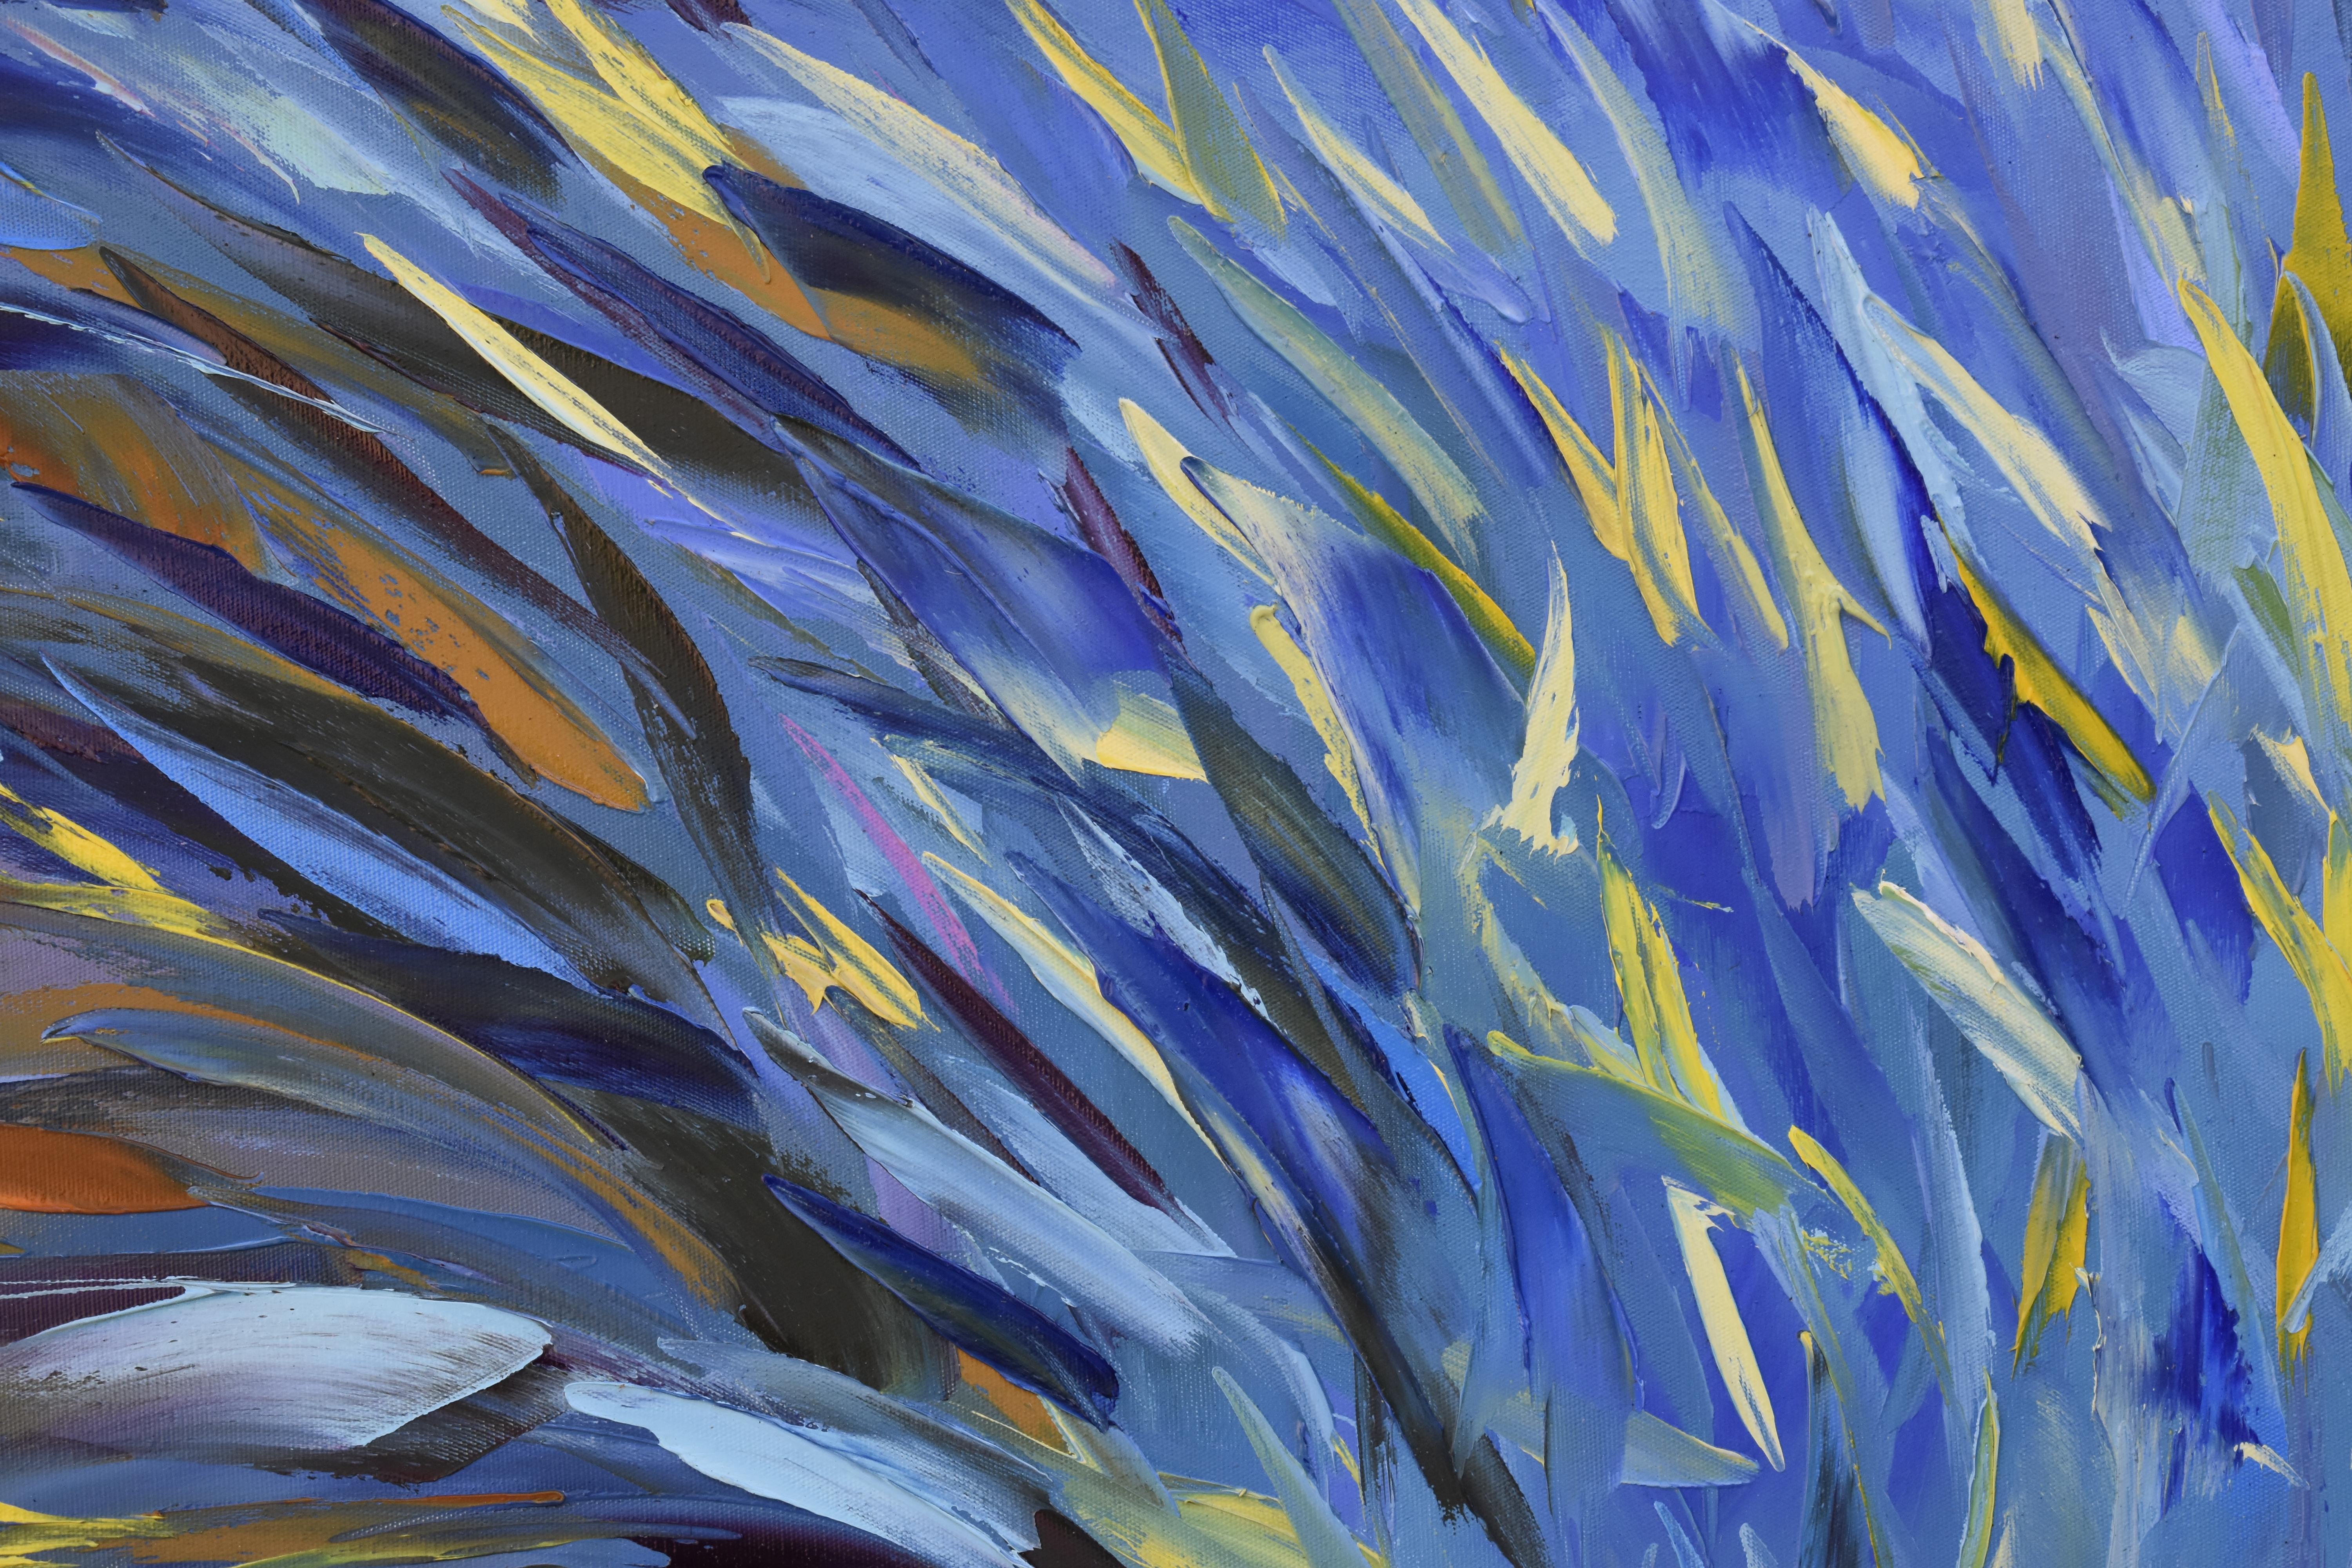 Tropical School of Fish - Abstract Painting by Olga Nikitina